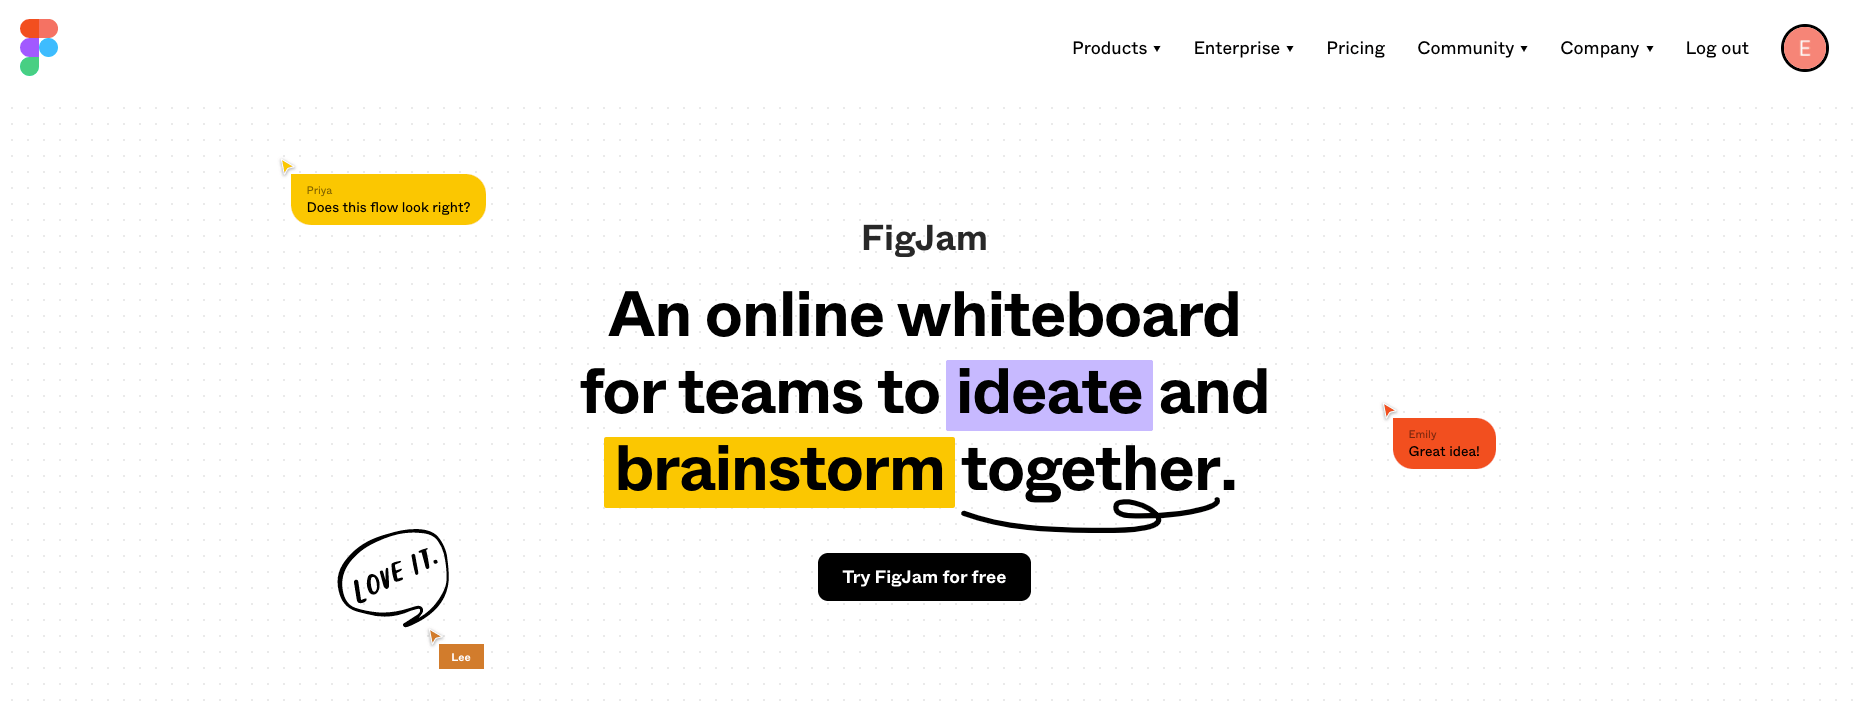 FigJam ideation tool main website